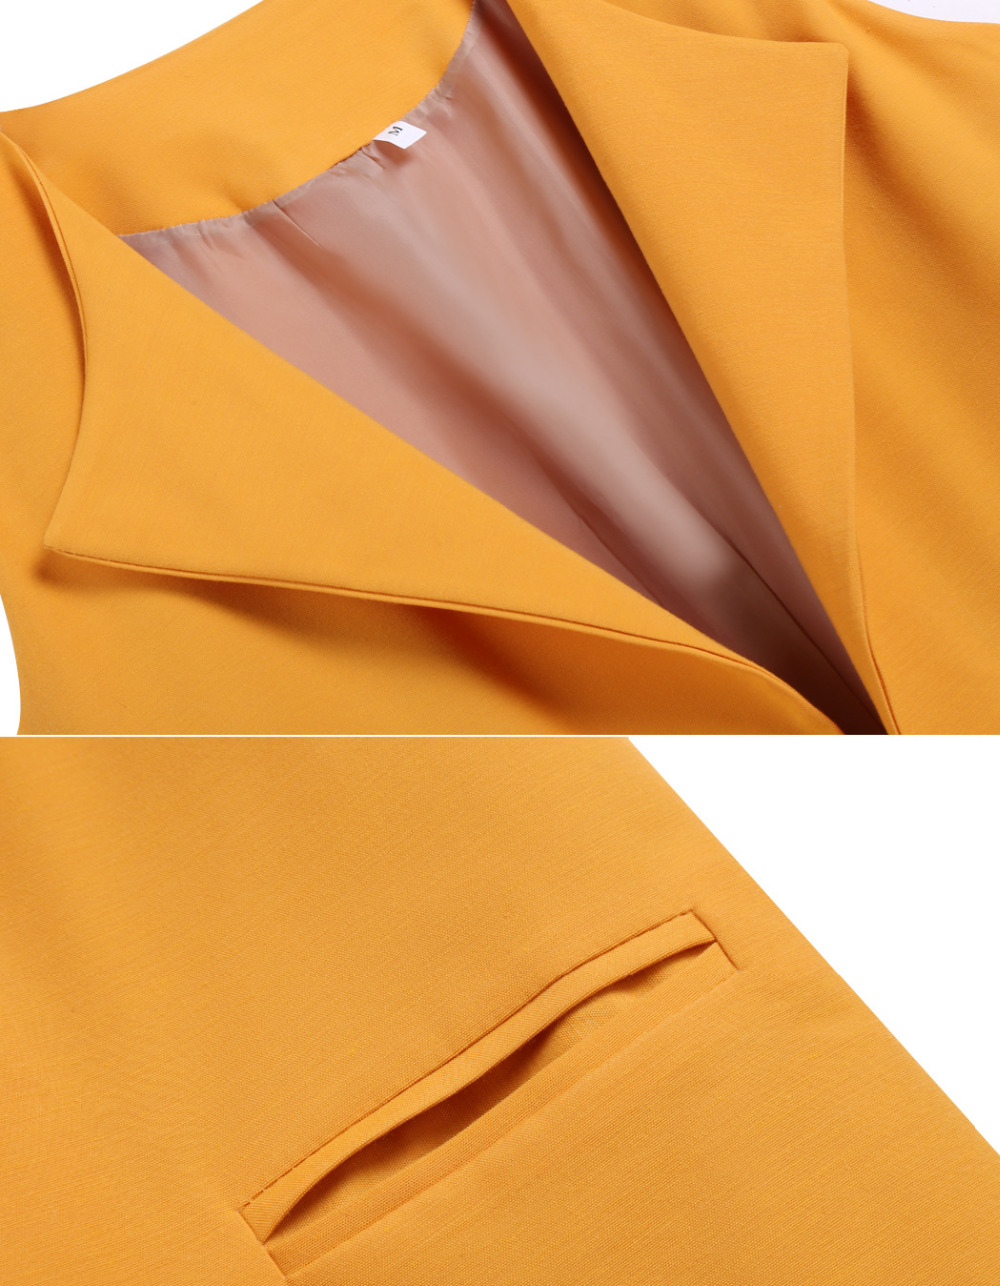 2015 новое поступление женщины жилетка безрукавка задняя пиджаки свободного покроя оранжевый осень кардиган Roupa женский бесплатная доставка